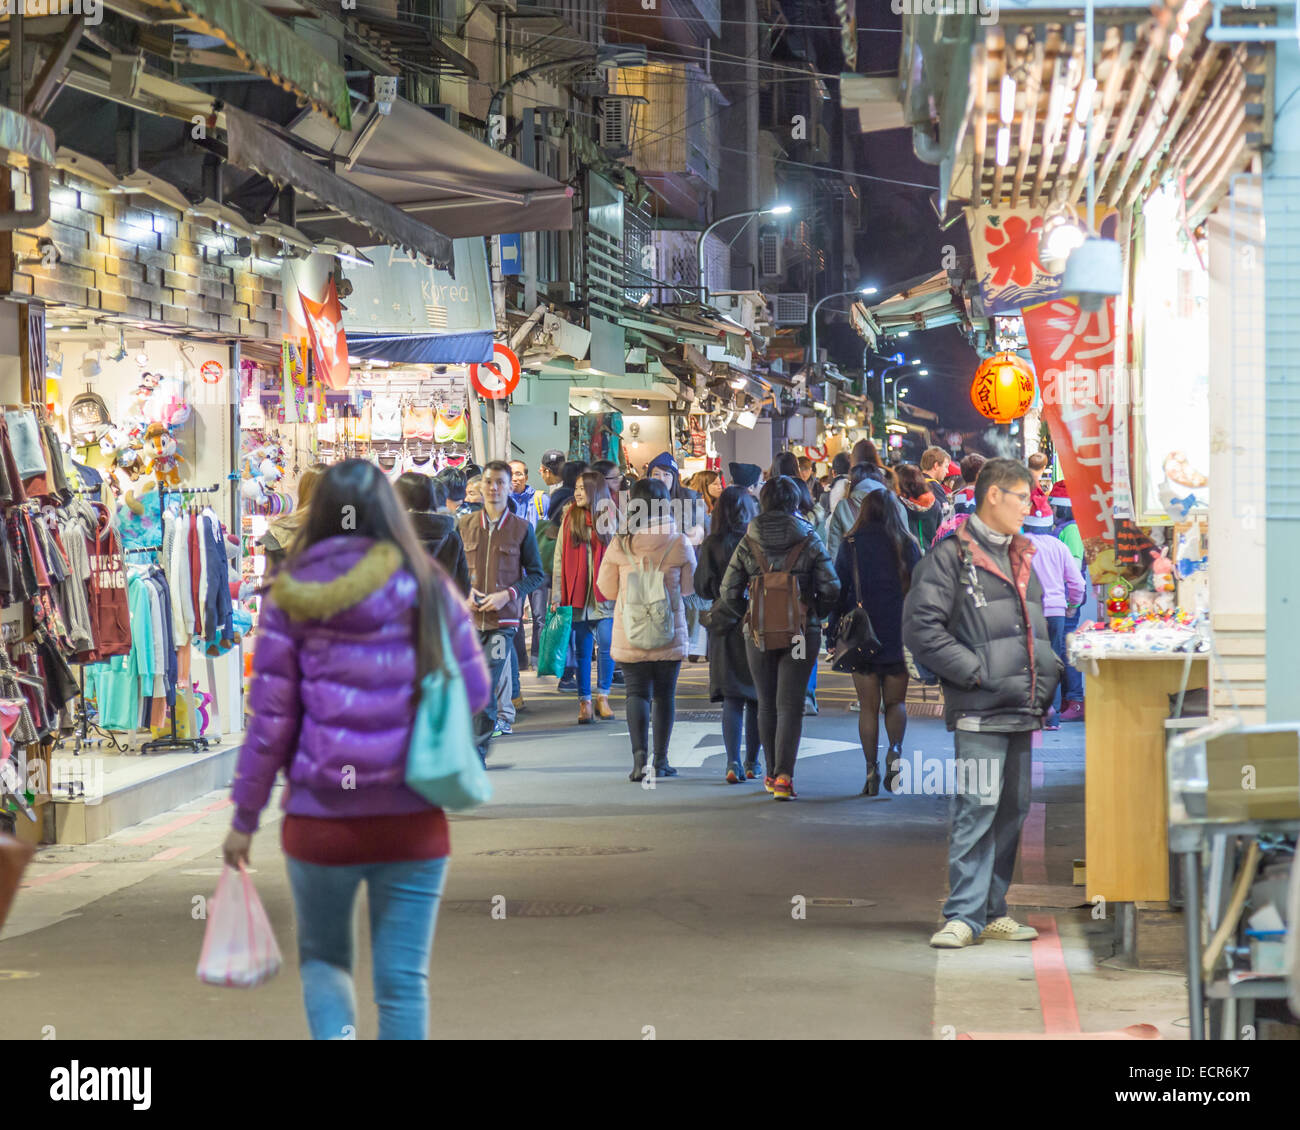 TAIPEI CITY, TAIPEI, TAIWAN. DECEMBER 17, 2014.  People walking through Shida night market in Taipei City Stock Photo